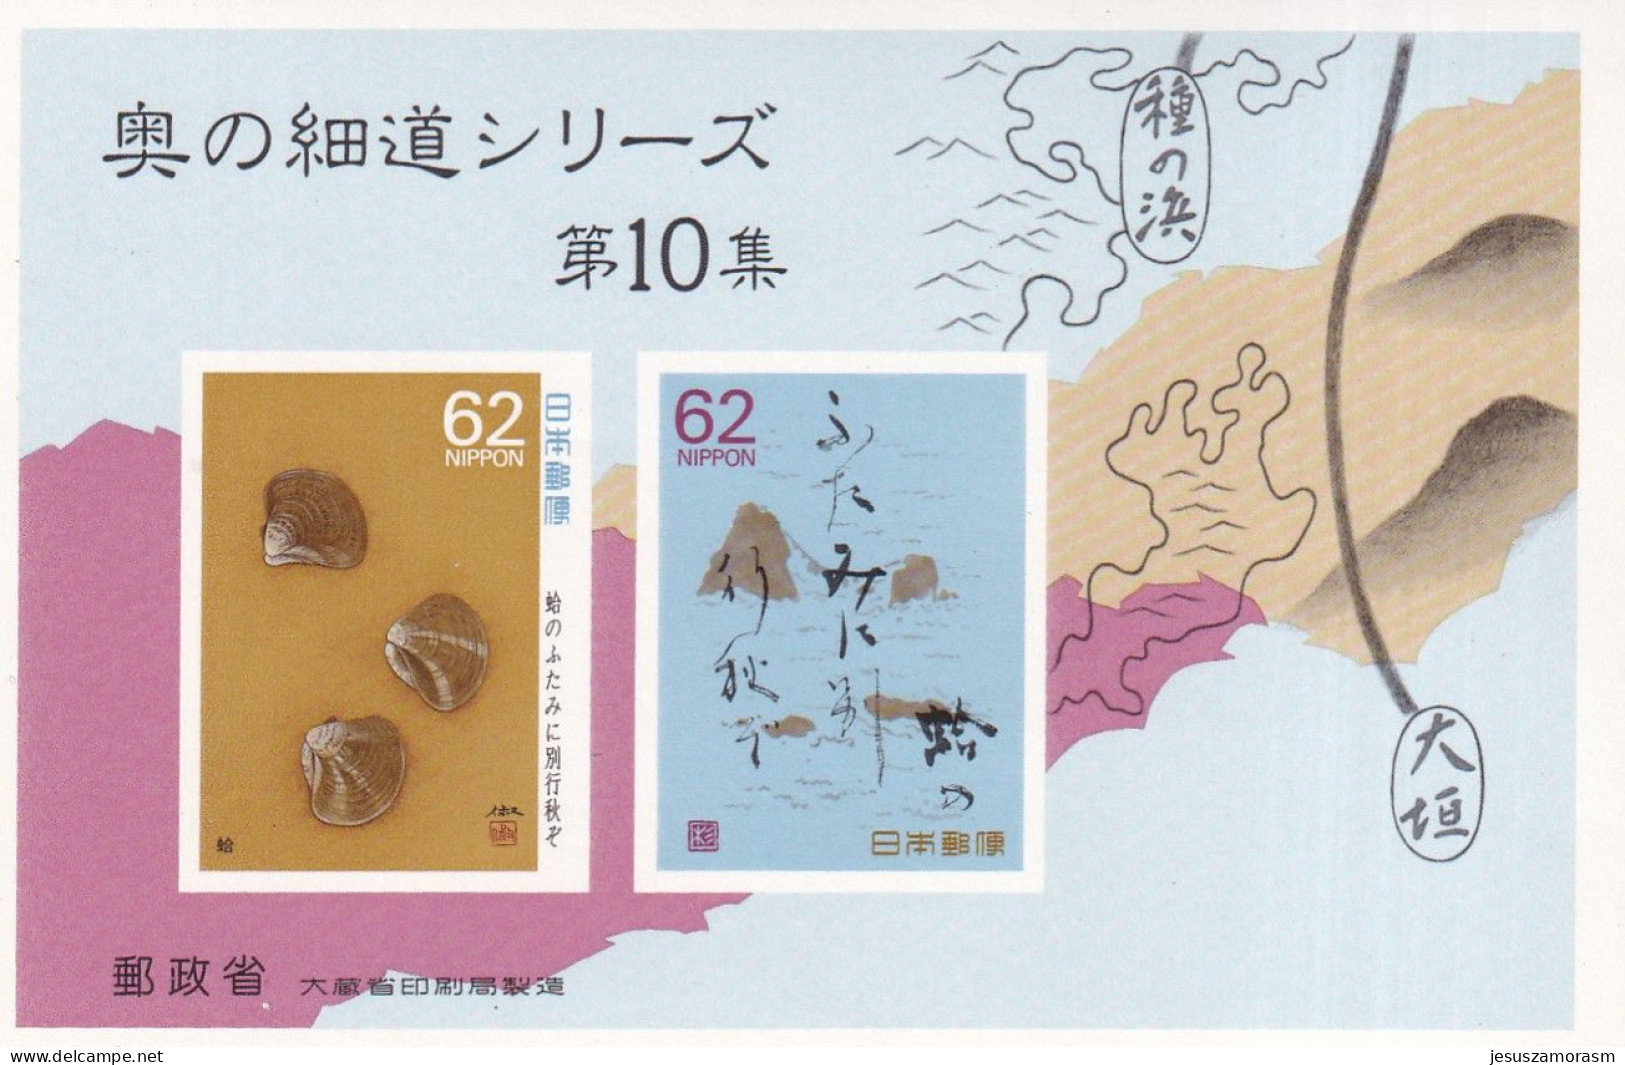 Japon hb 113 al 122